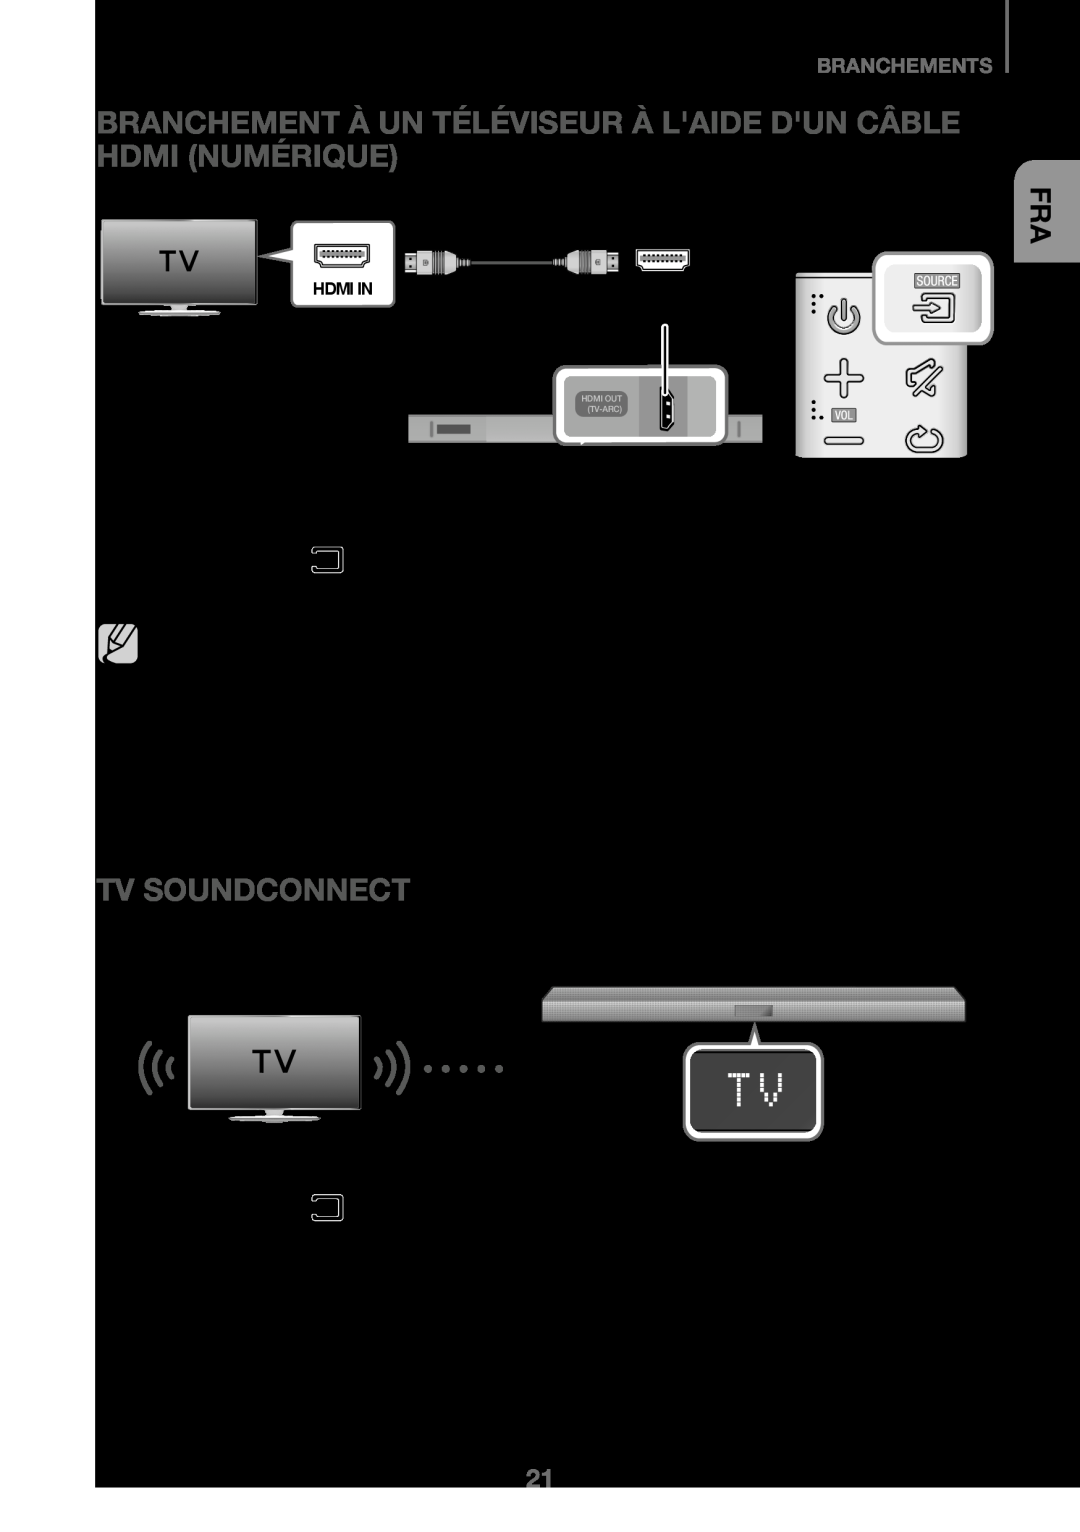 Samsung HW-K450/EN Branchement À Un Téléviseur À Laide Dun Câble Hdmi Numérique, Tv Soundconnect, Branchements, Câble HDMI 